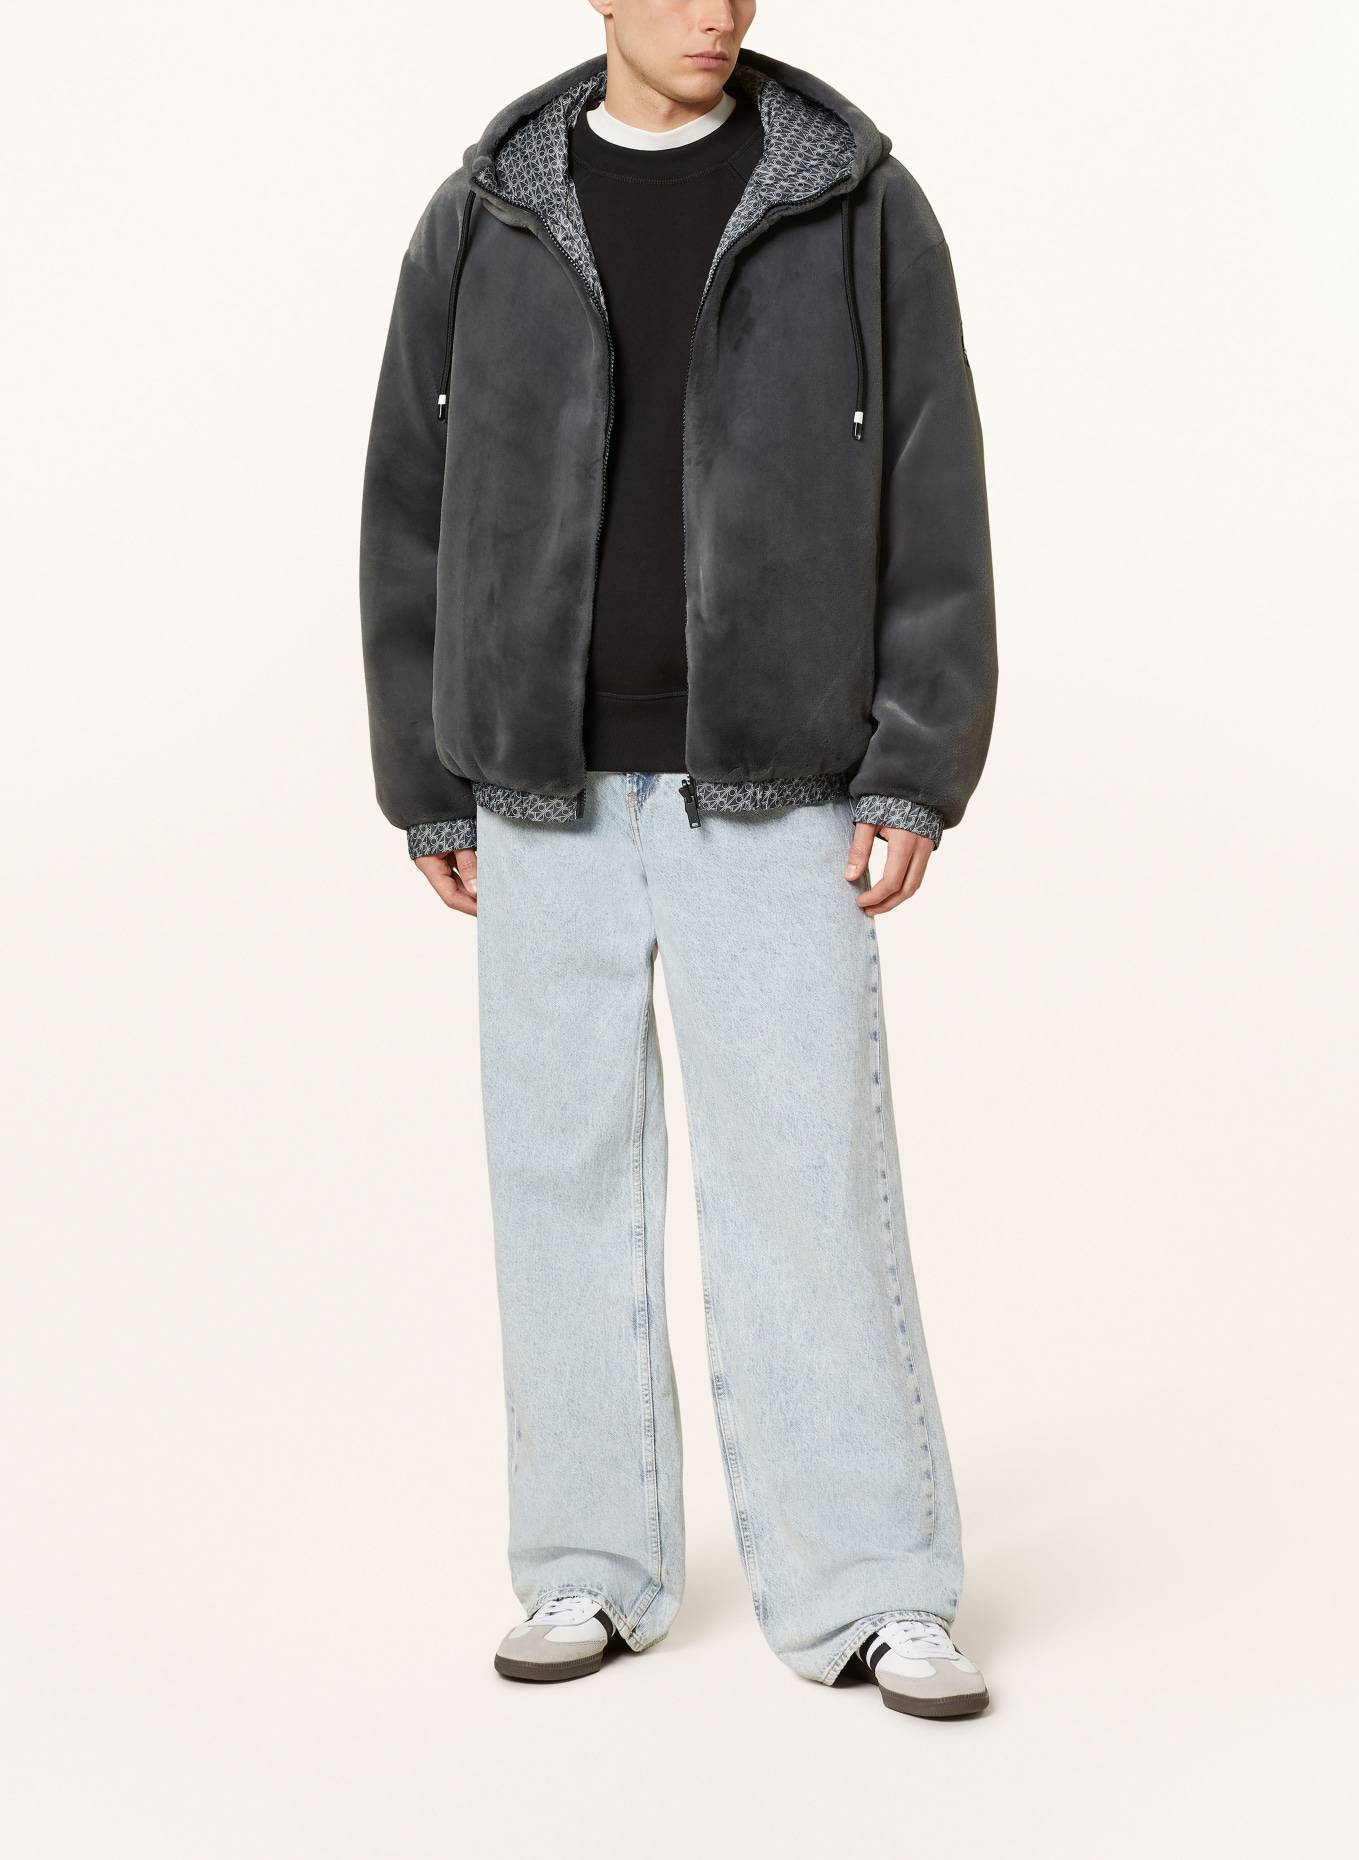 MOOSE KNUCKLES Jacket BORDEN BUNNY reversible with faux fur, Color: DARK GRAY (Image 3)